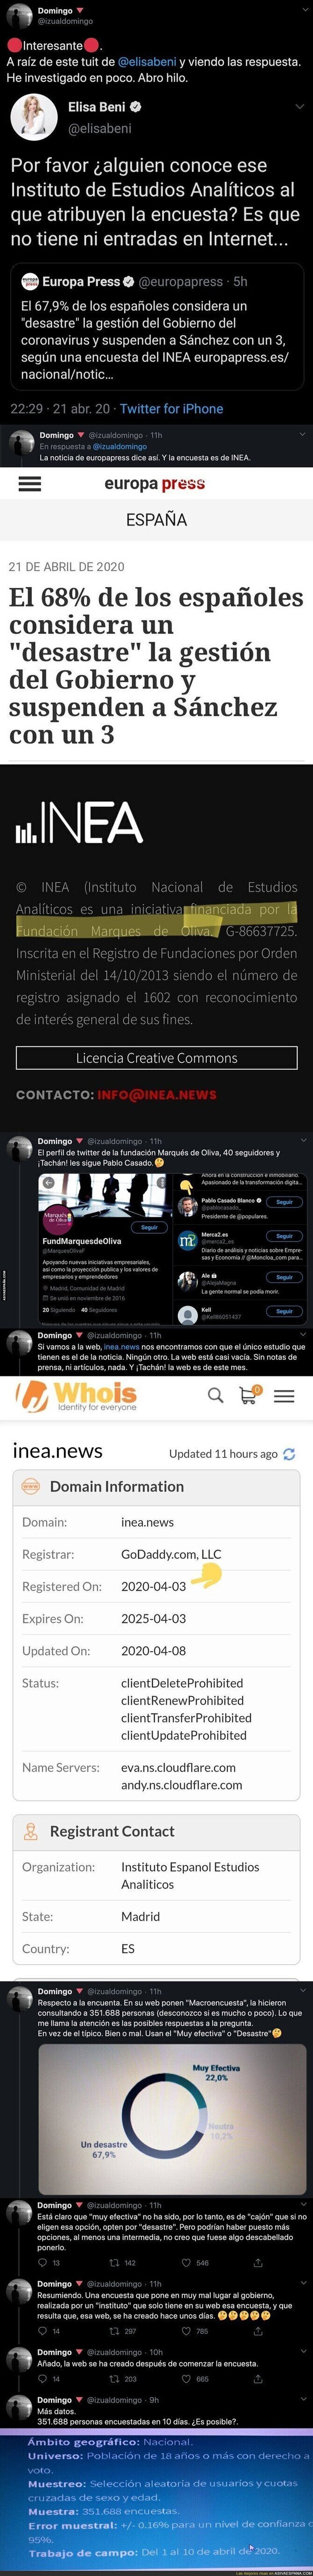 La sospechosa encuesta que suspende a Pedro Sánchez por la crisis del coronavirus que un usuario de Twitter ha sacado quien hay detrás